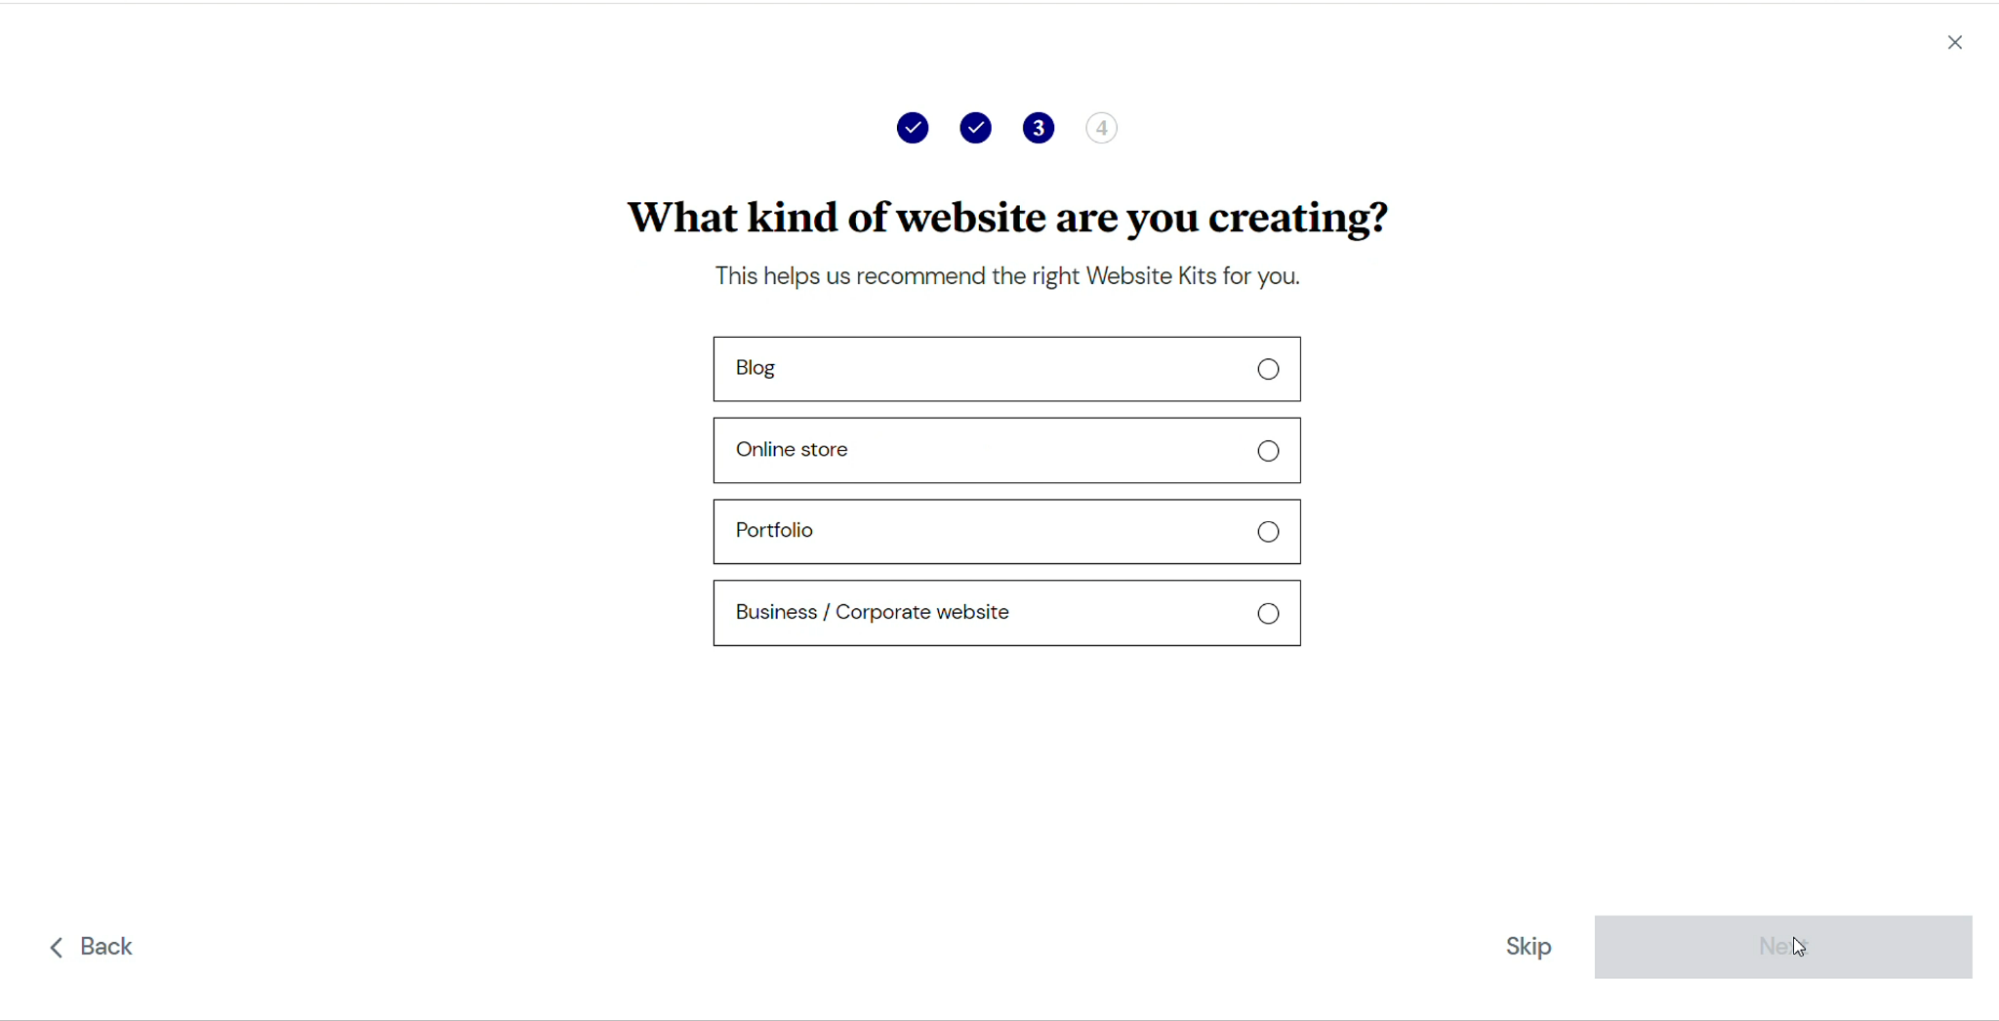 网站类型选择过程的屏幕截图。 用户有四种选择； 博客、在线商店、投资组合以及商业或公司网站。